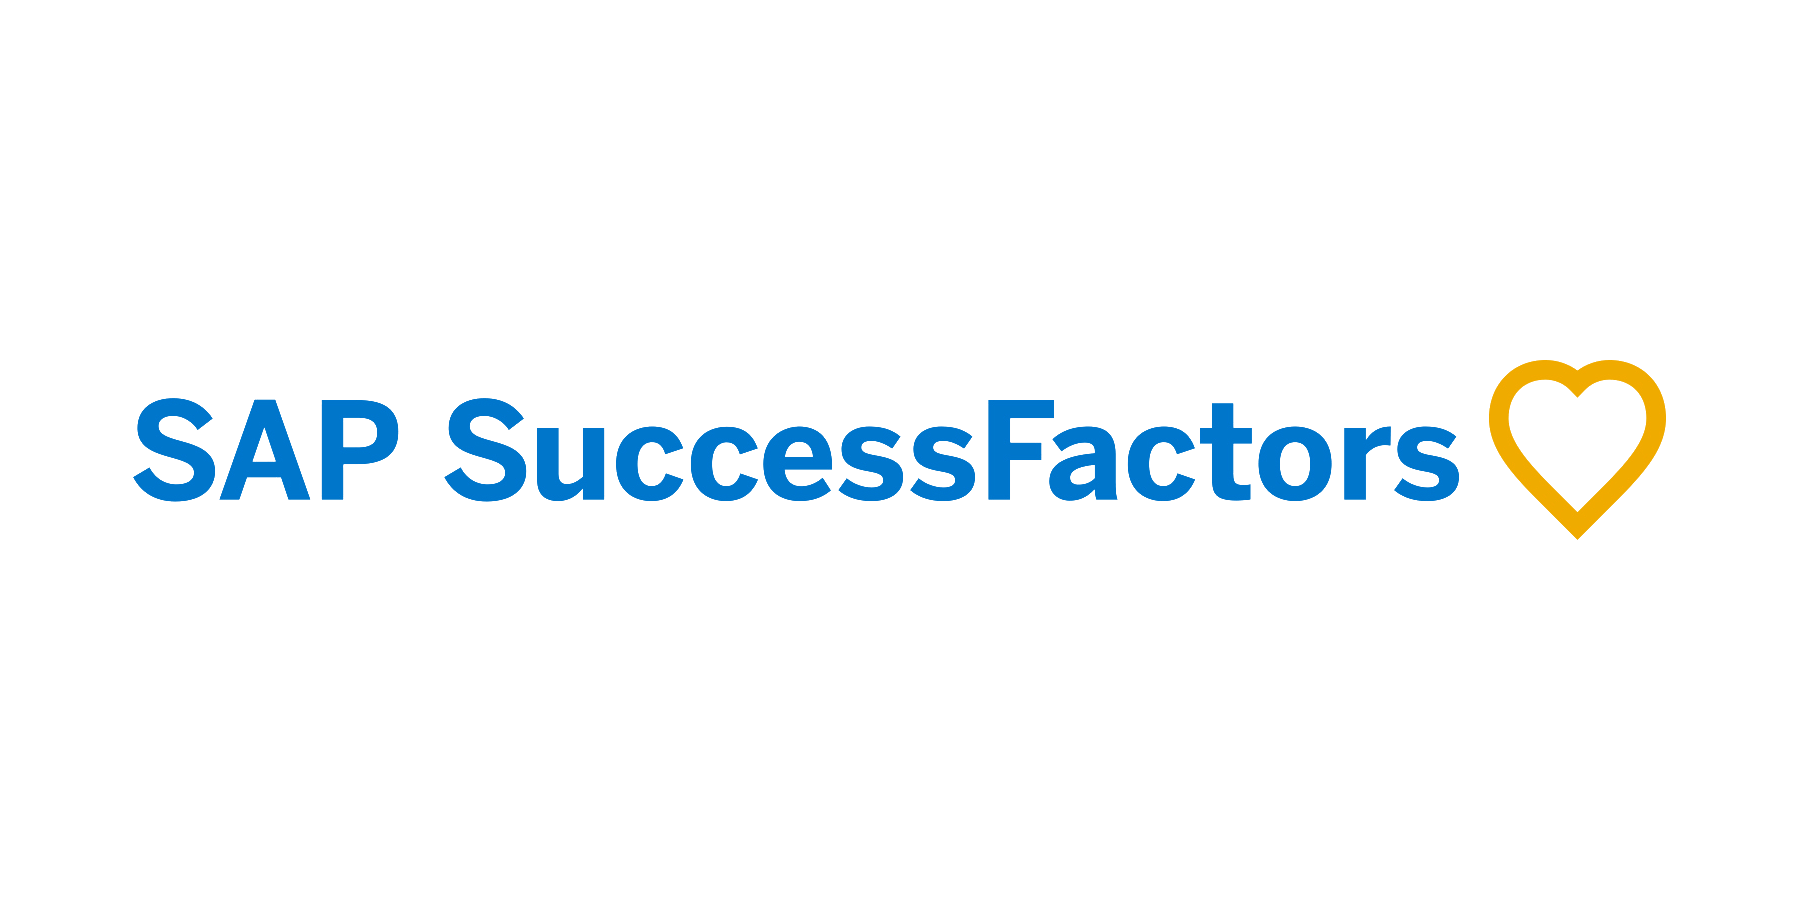 SAP succesfactors logo